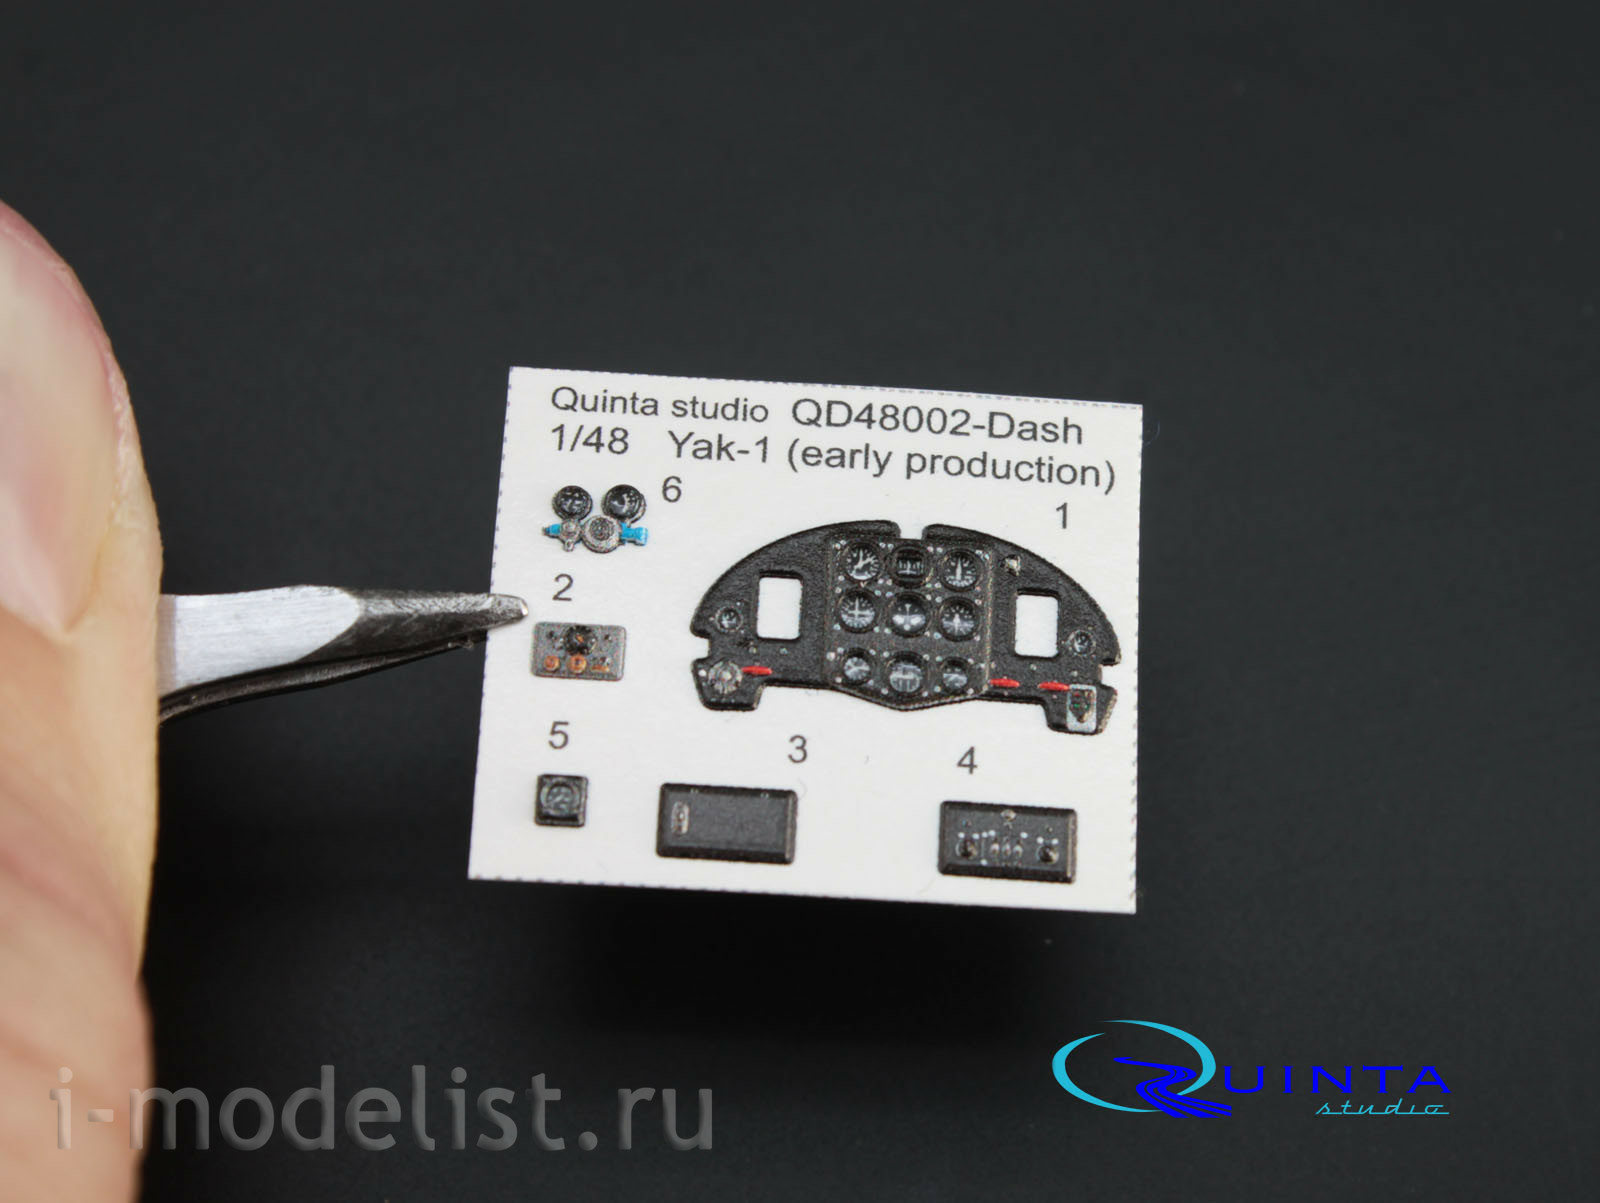 QD48002-Dash Quinta Studio 1/48 3D Декаль интерьера кабины Як-1 (ранние серии) (для модели Моделсвит/ЮФ)